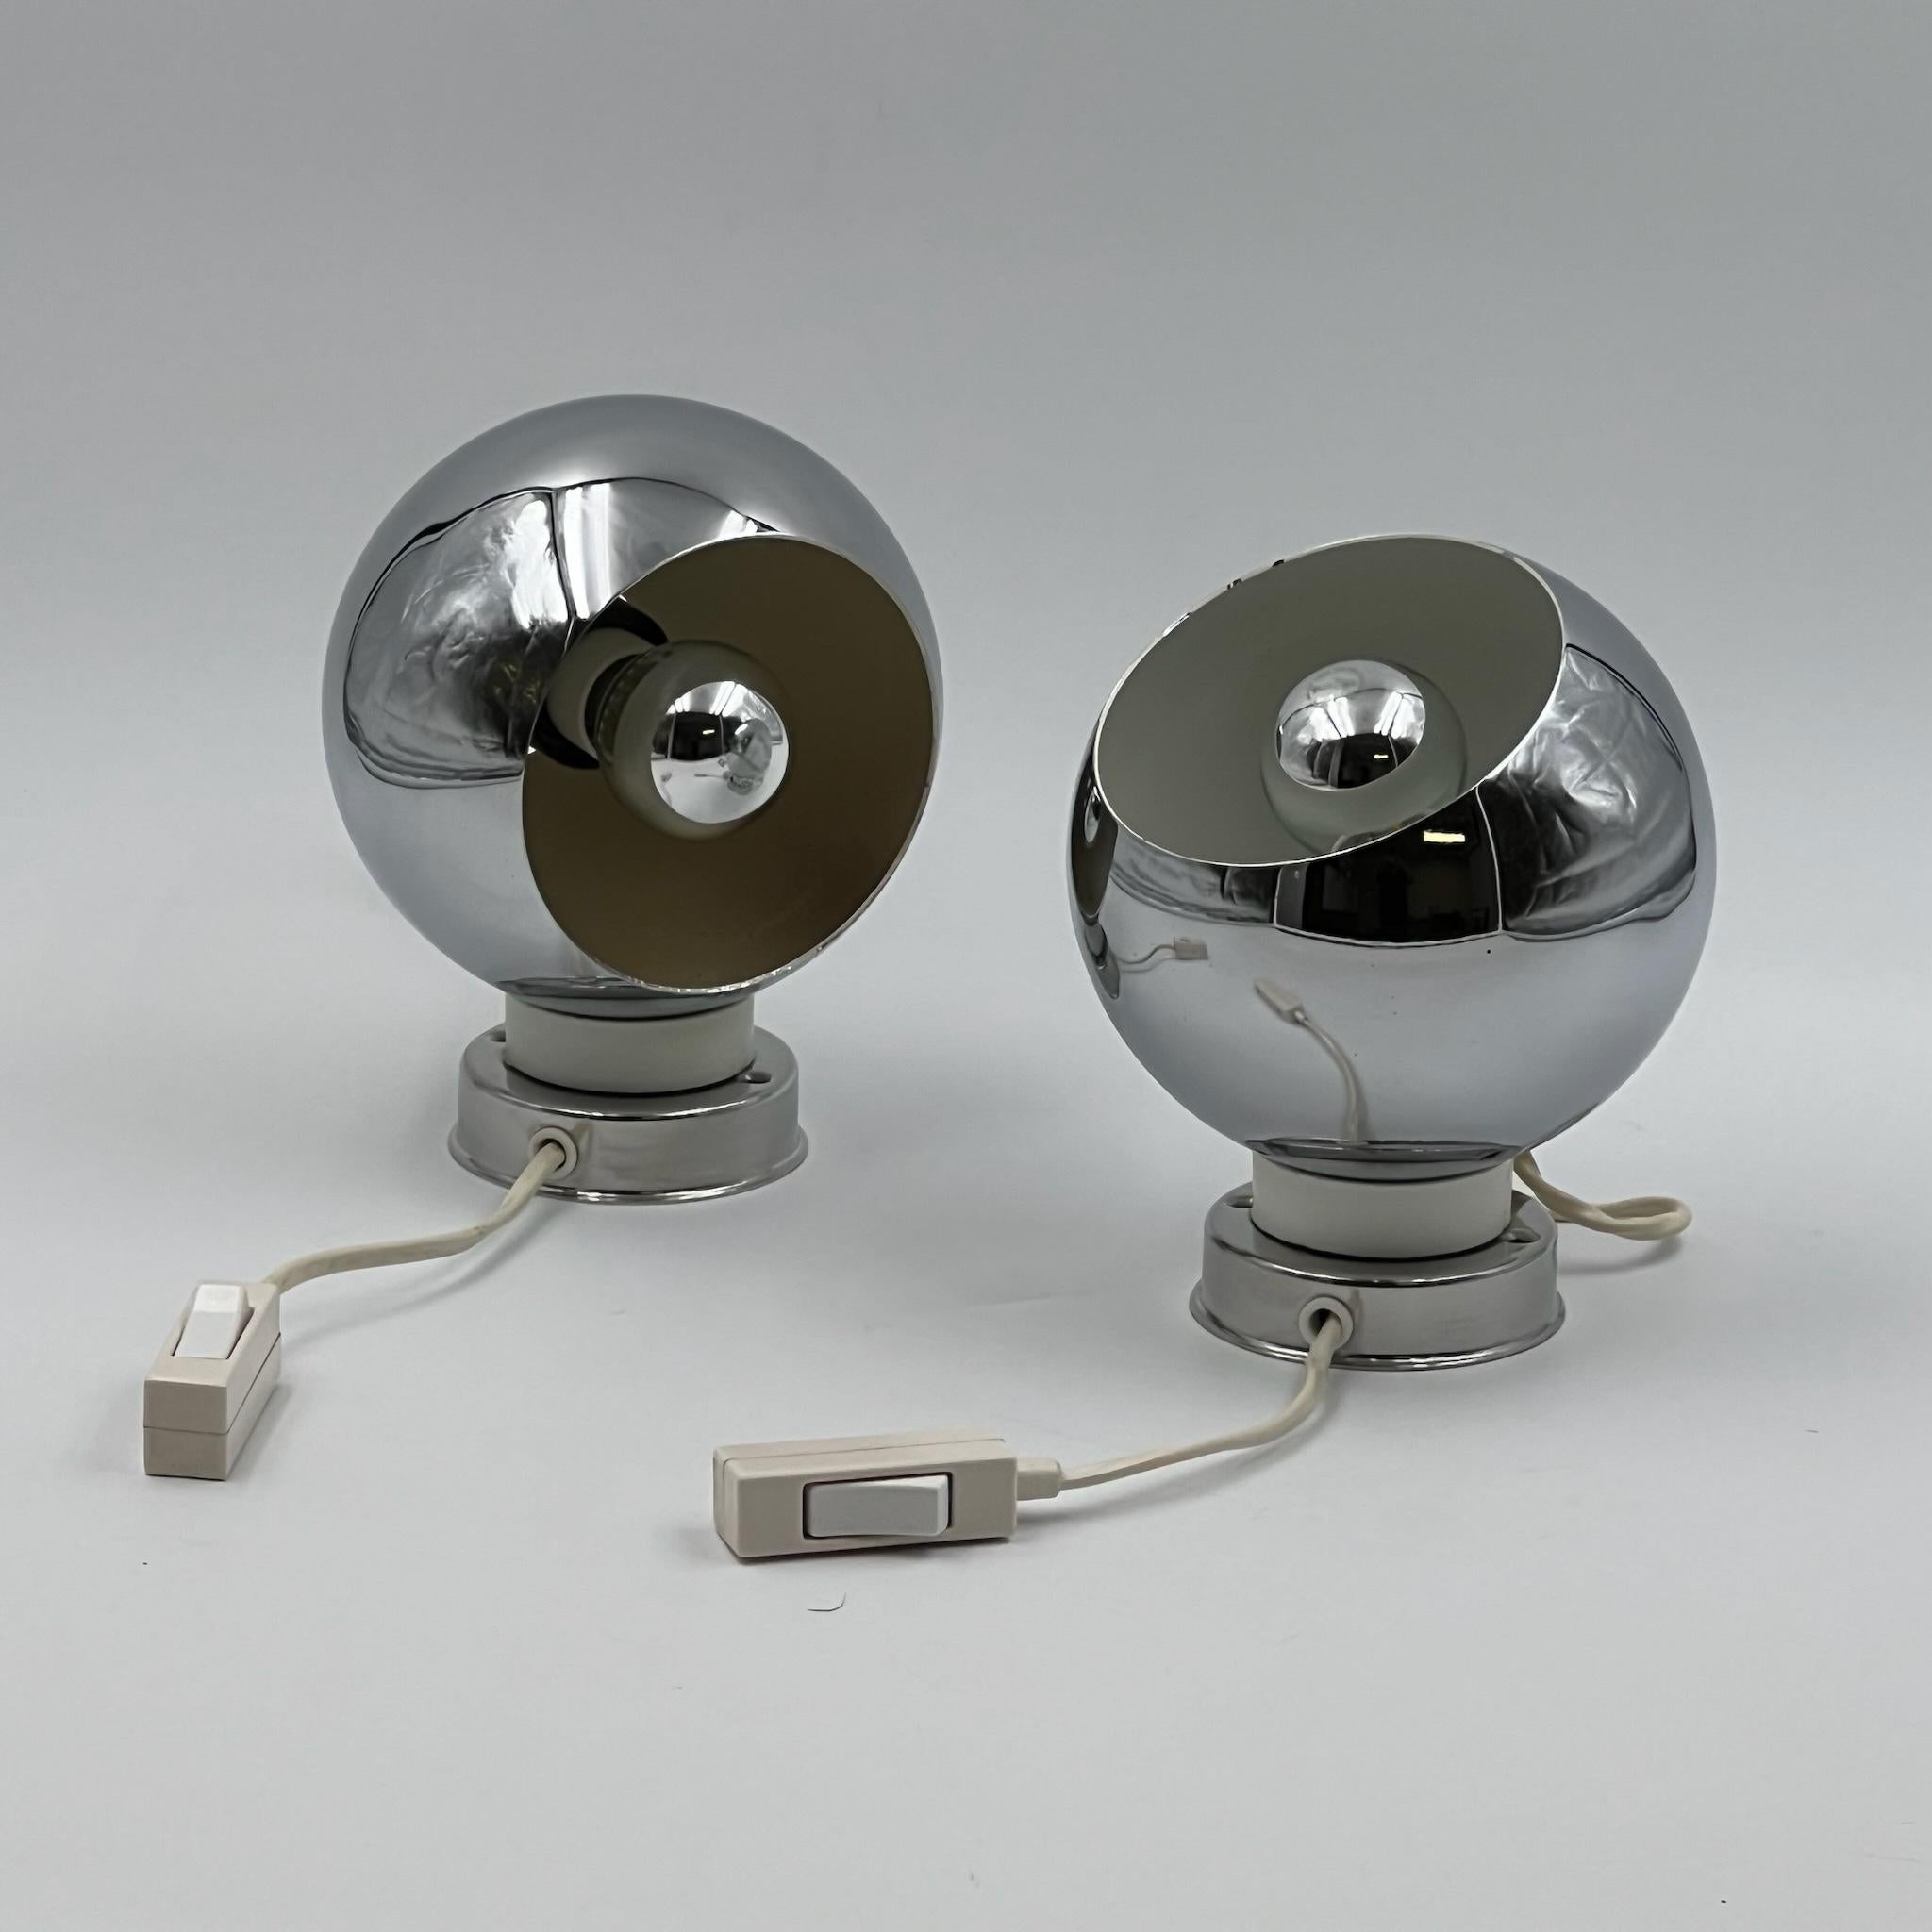 Ikonische Reggiani-Lampen „Eyeball“ 60er Jahre - Paar Vintage-Meisterwerke - 2er-Set (Italienisch)